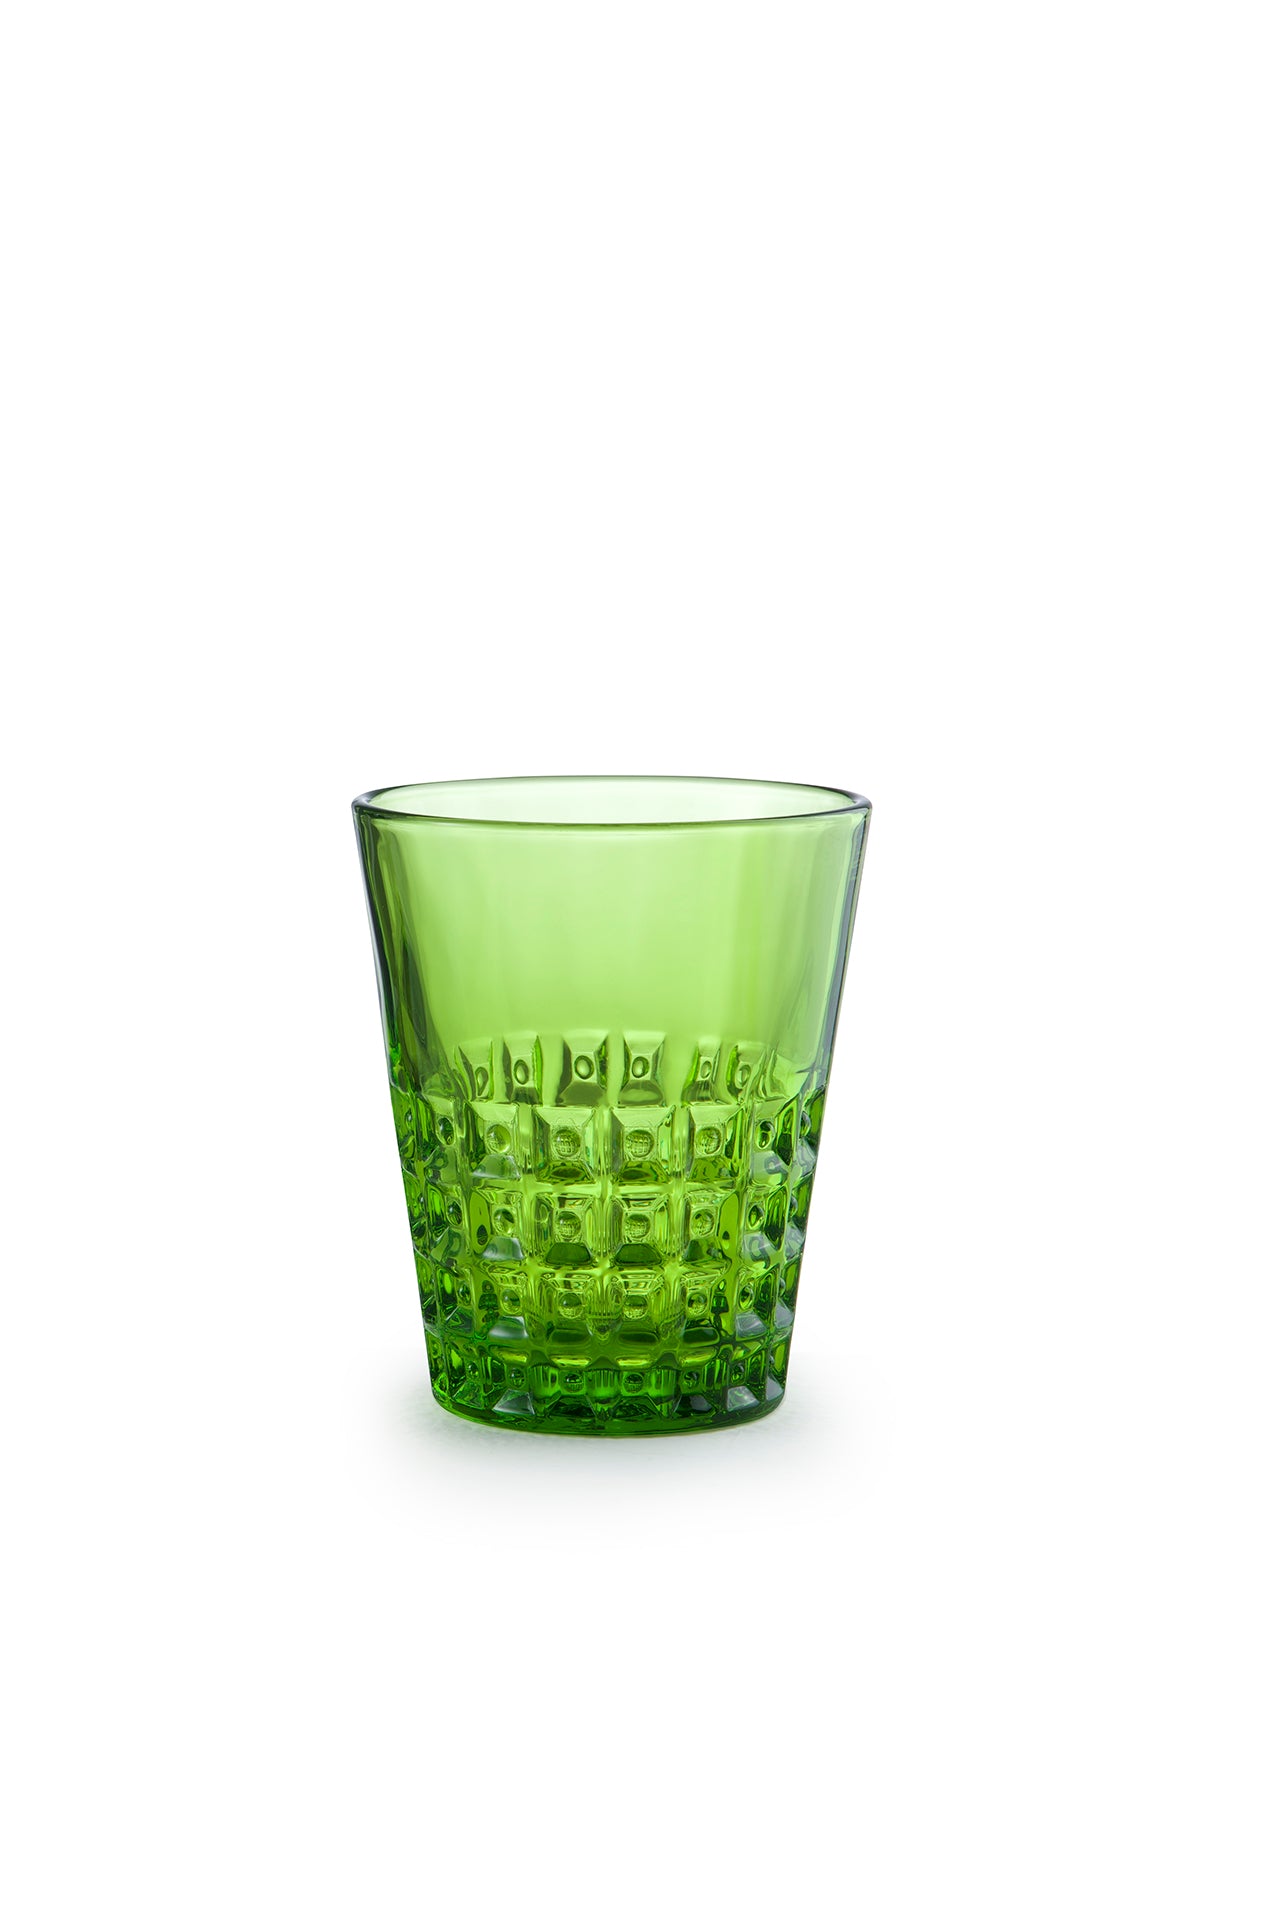 immagine-1-kaleidos-windsor-bicchiere-250-ml-verde-6-pz-ean-8059070158908